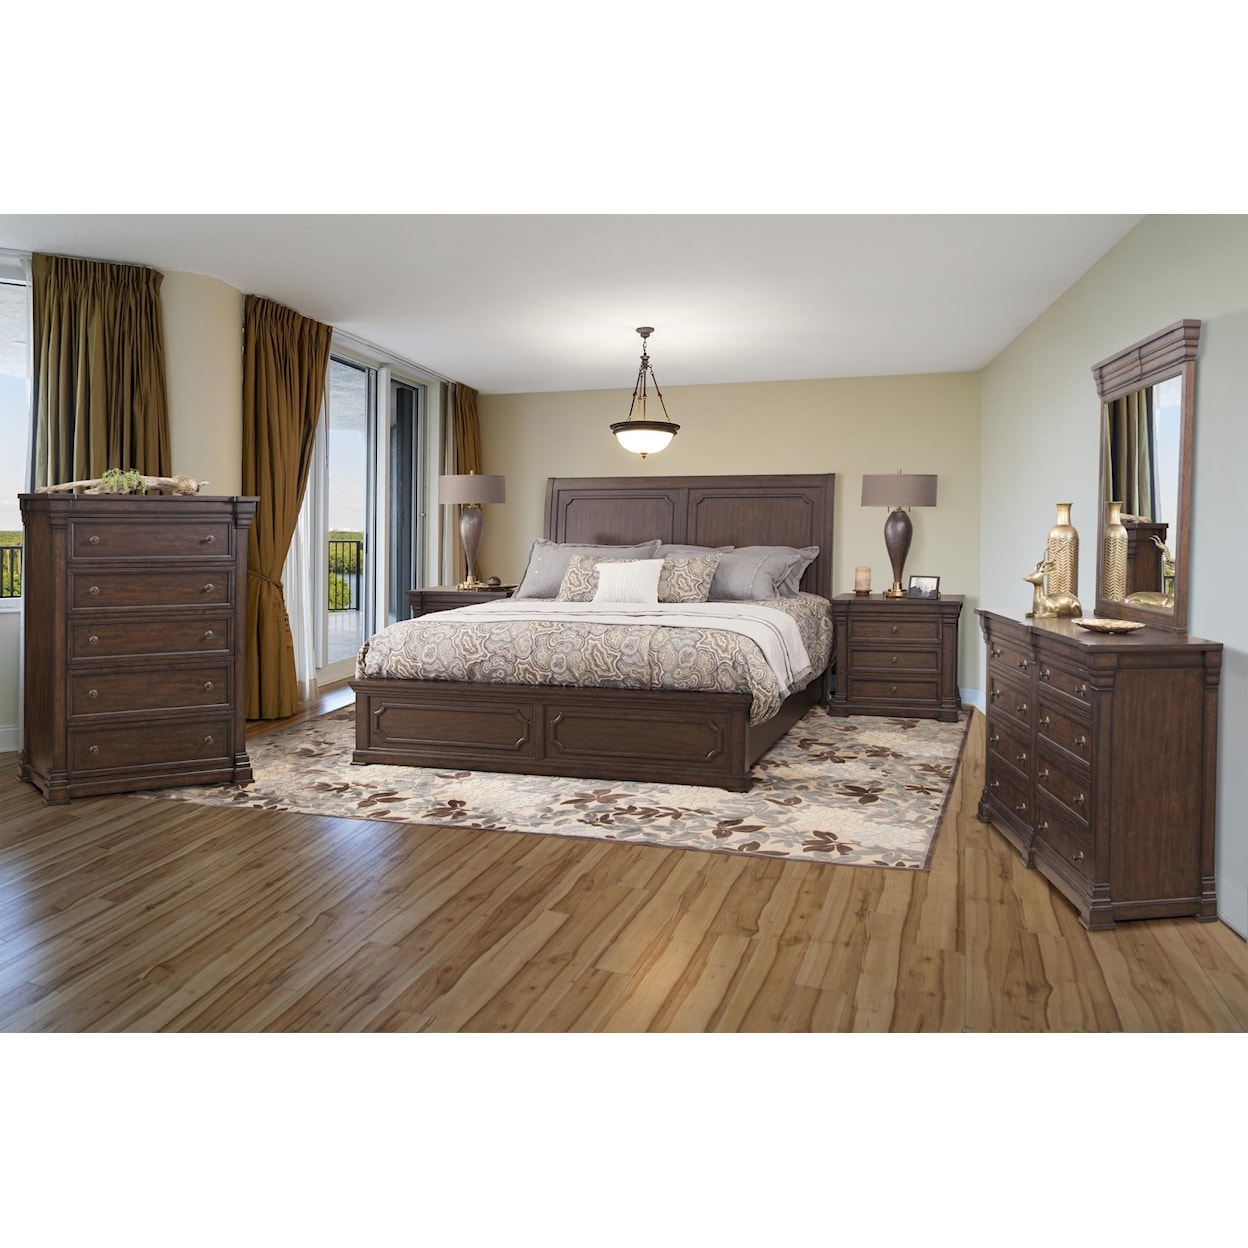 American Woodcrafters Kestrel Hills King bedroom group